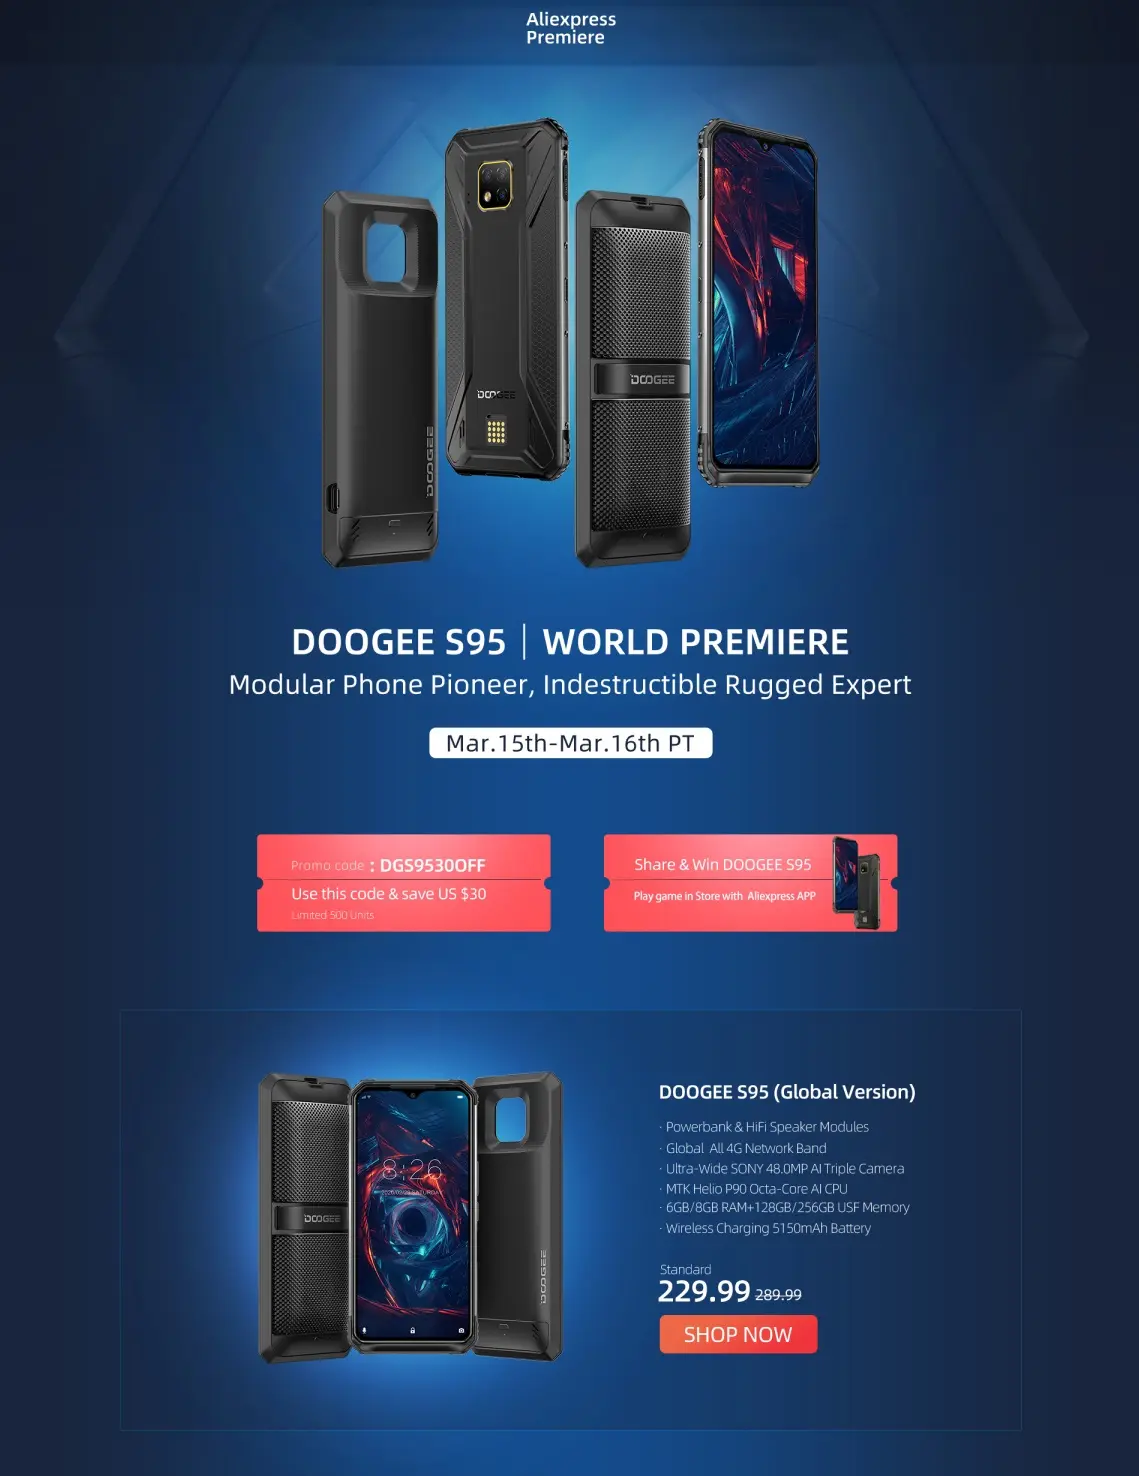 Doogee S95 debutará a nivel mundial en Aliexpress desde 9.99 USD